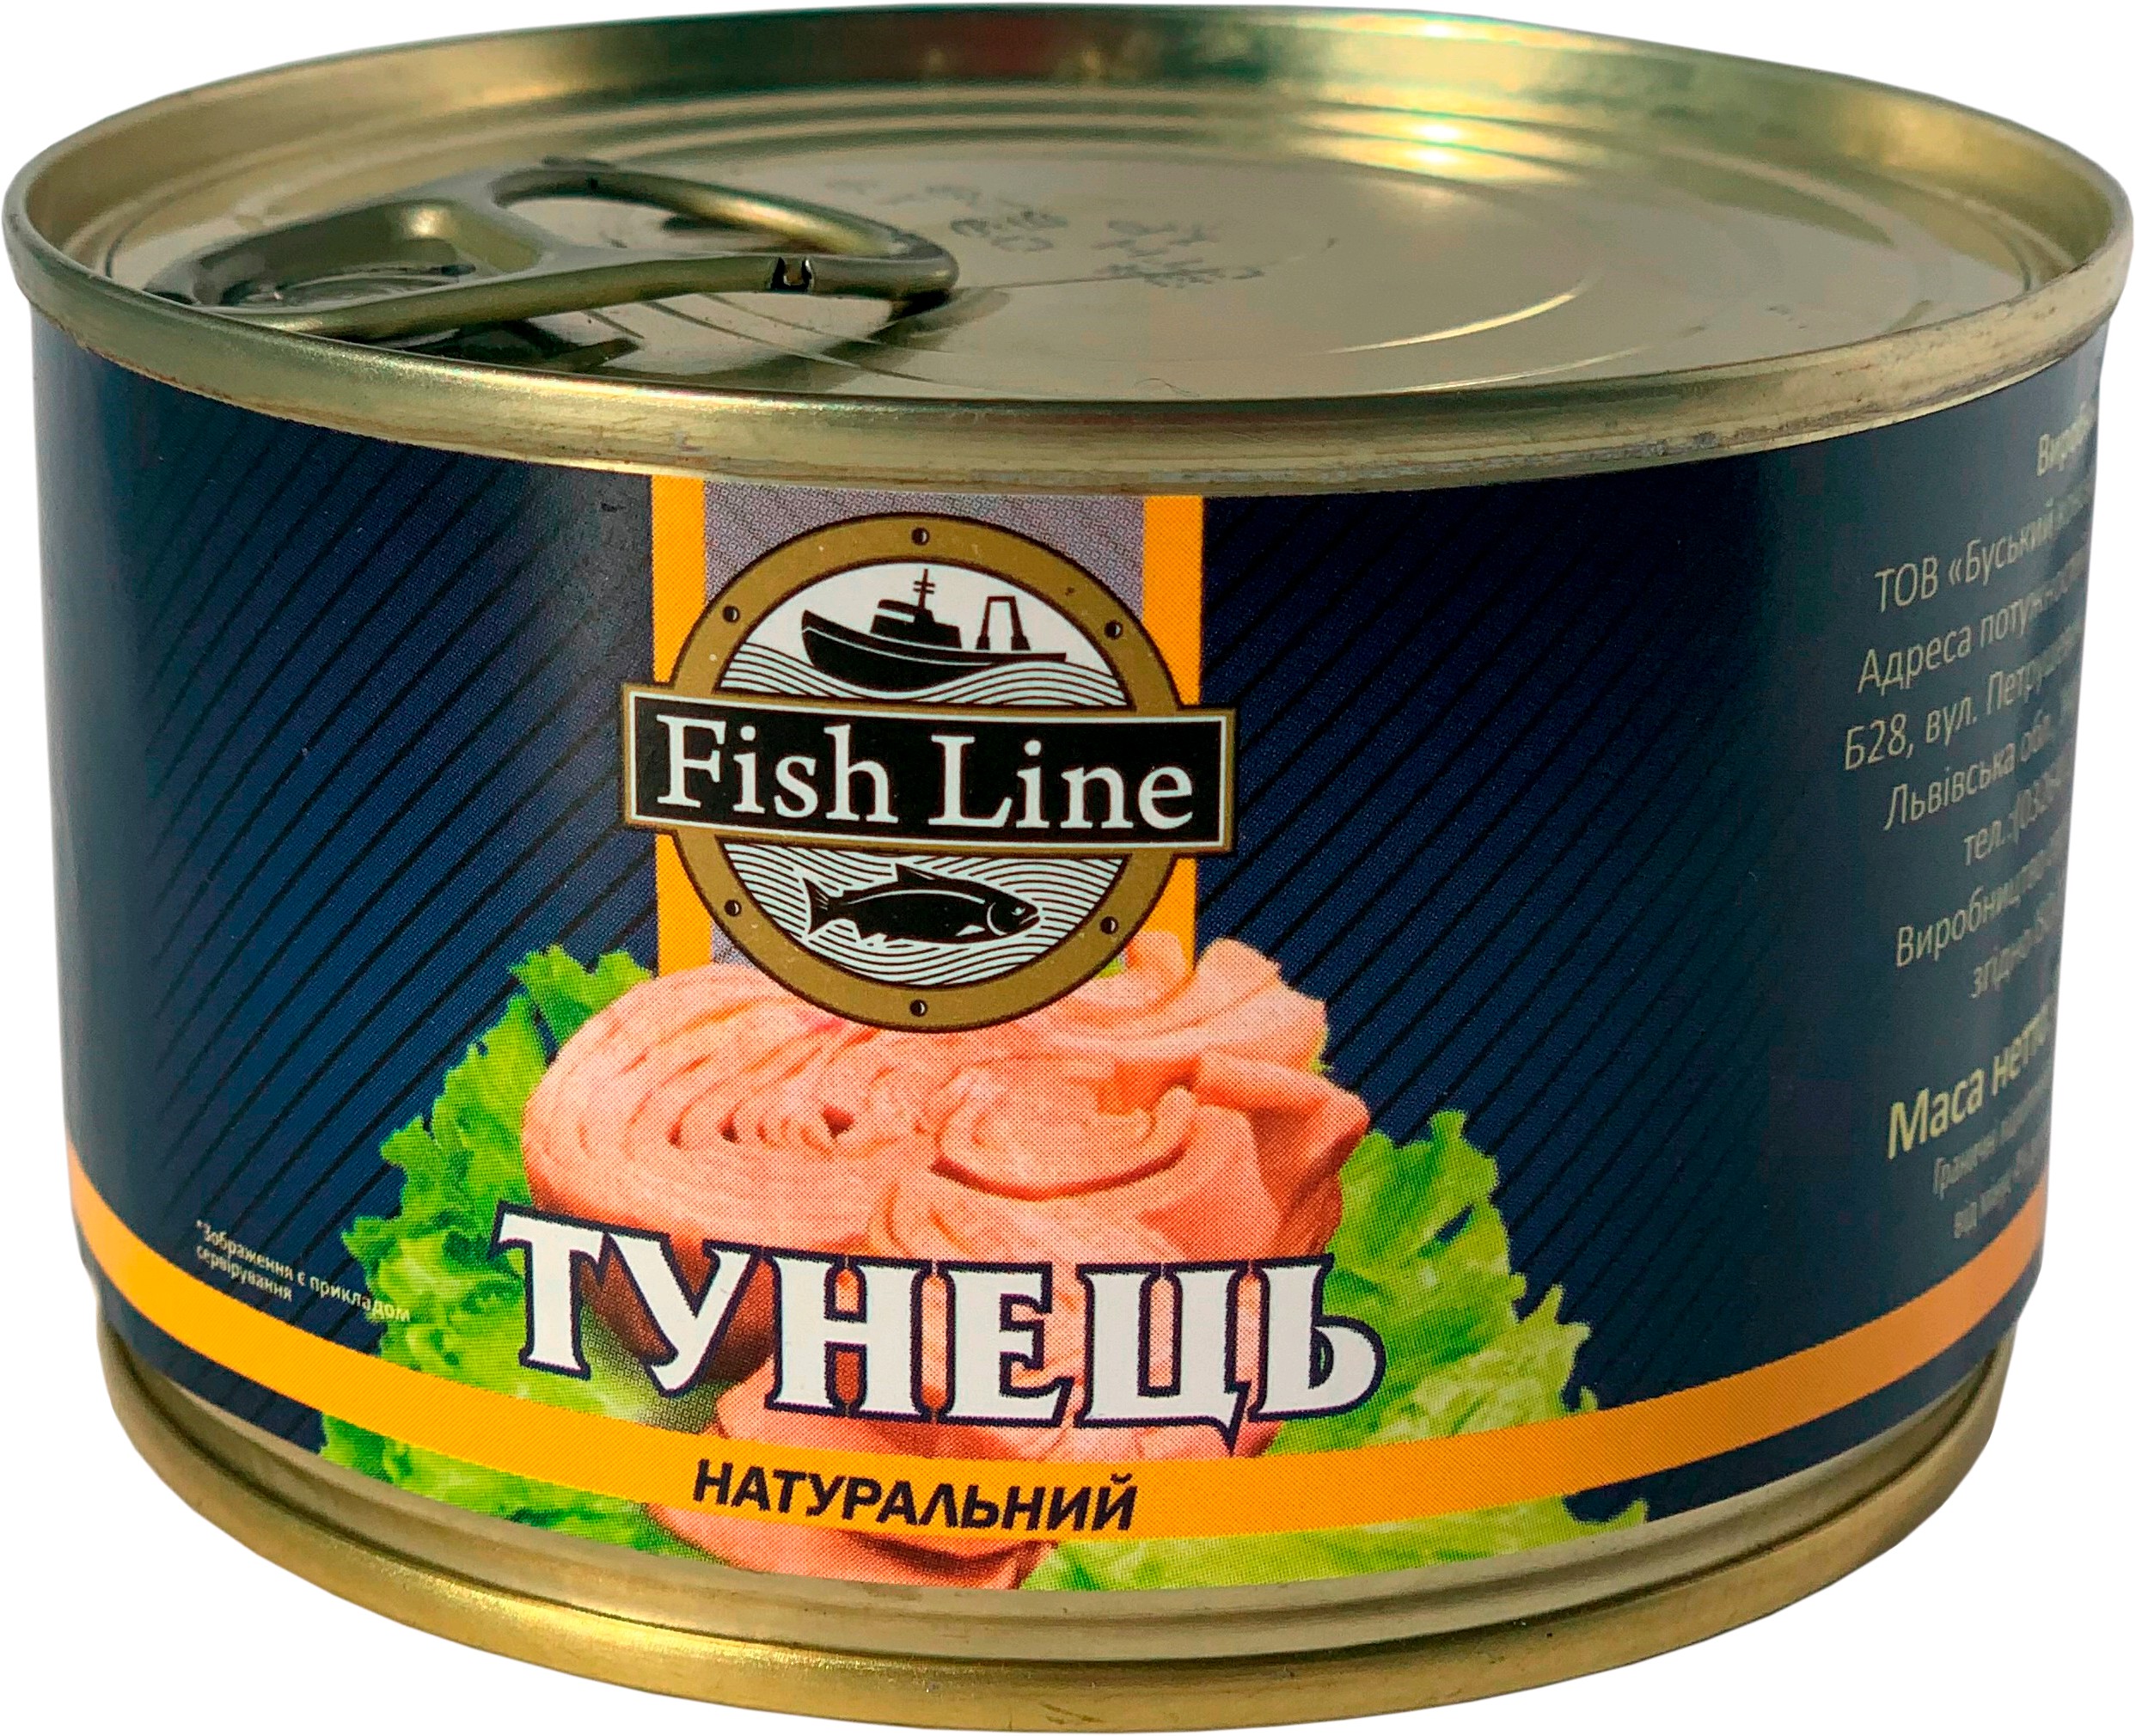 Консервированный тунец кусочками в собственном соку Фиш лайн, 185 г